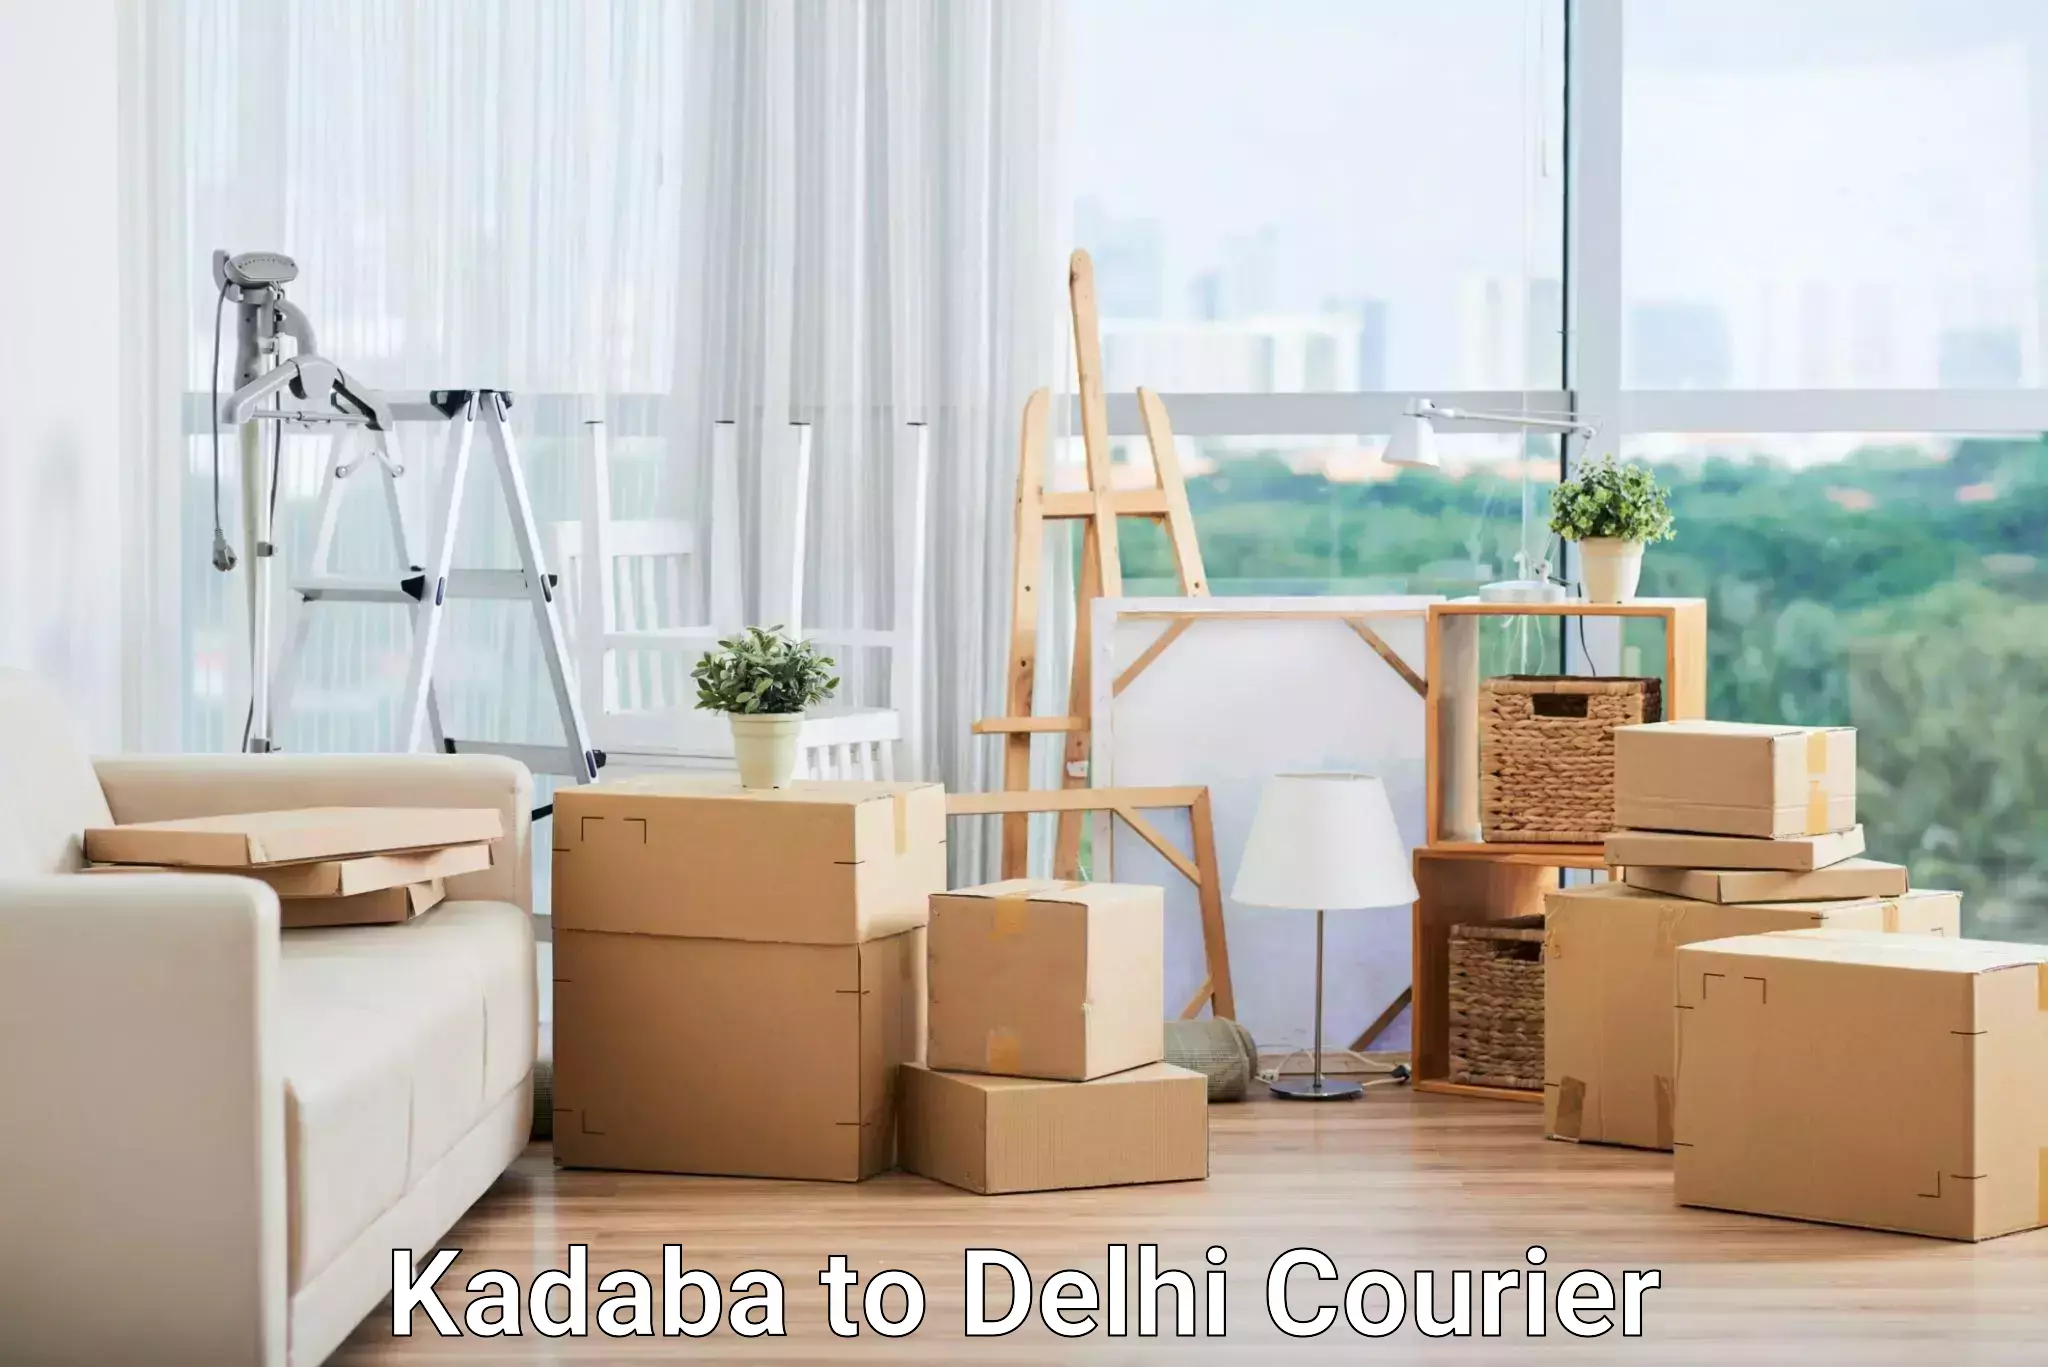 Door-to-door freight service Kadaba to University of Delhi